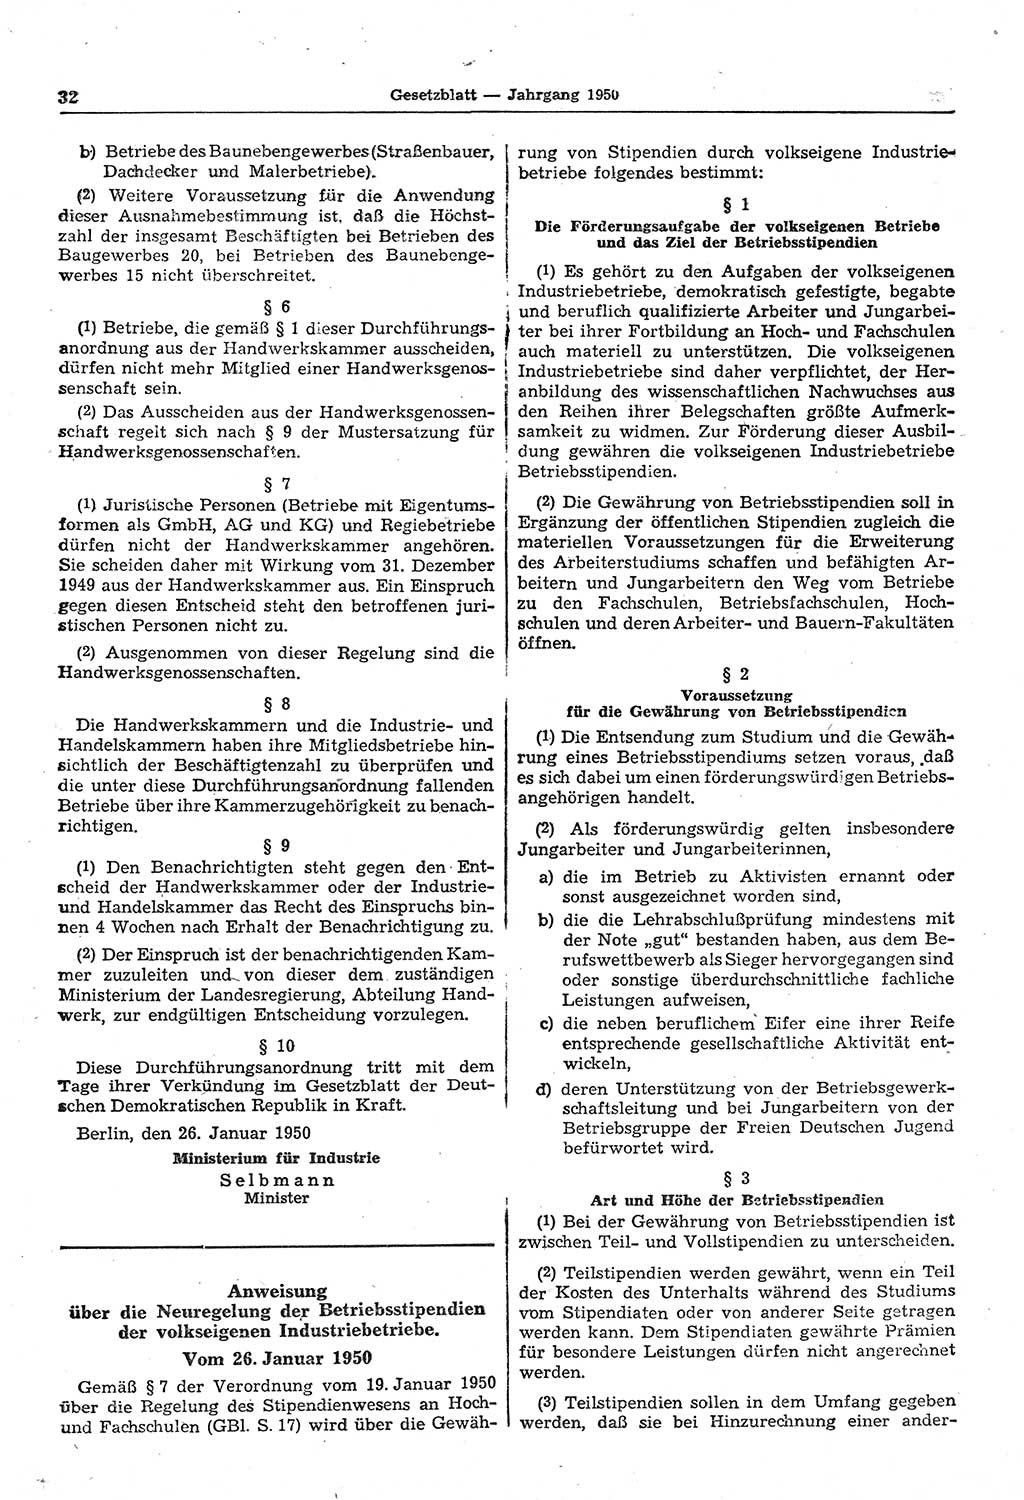 Gesetzblatt (GBl.) der Deutschen Demokratischen Republik (DDR) 1950, Seite 32 (GBl. DDR 1950, S. 32)